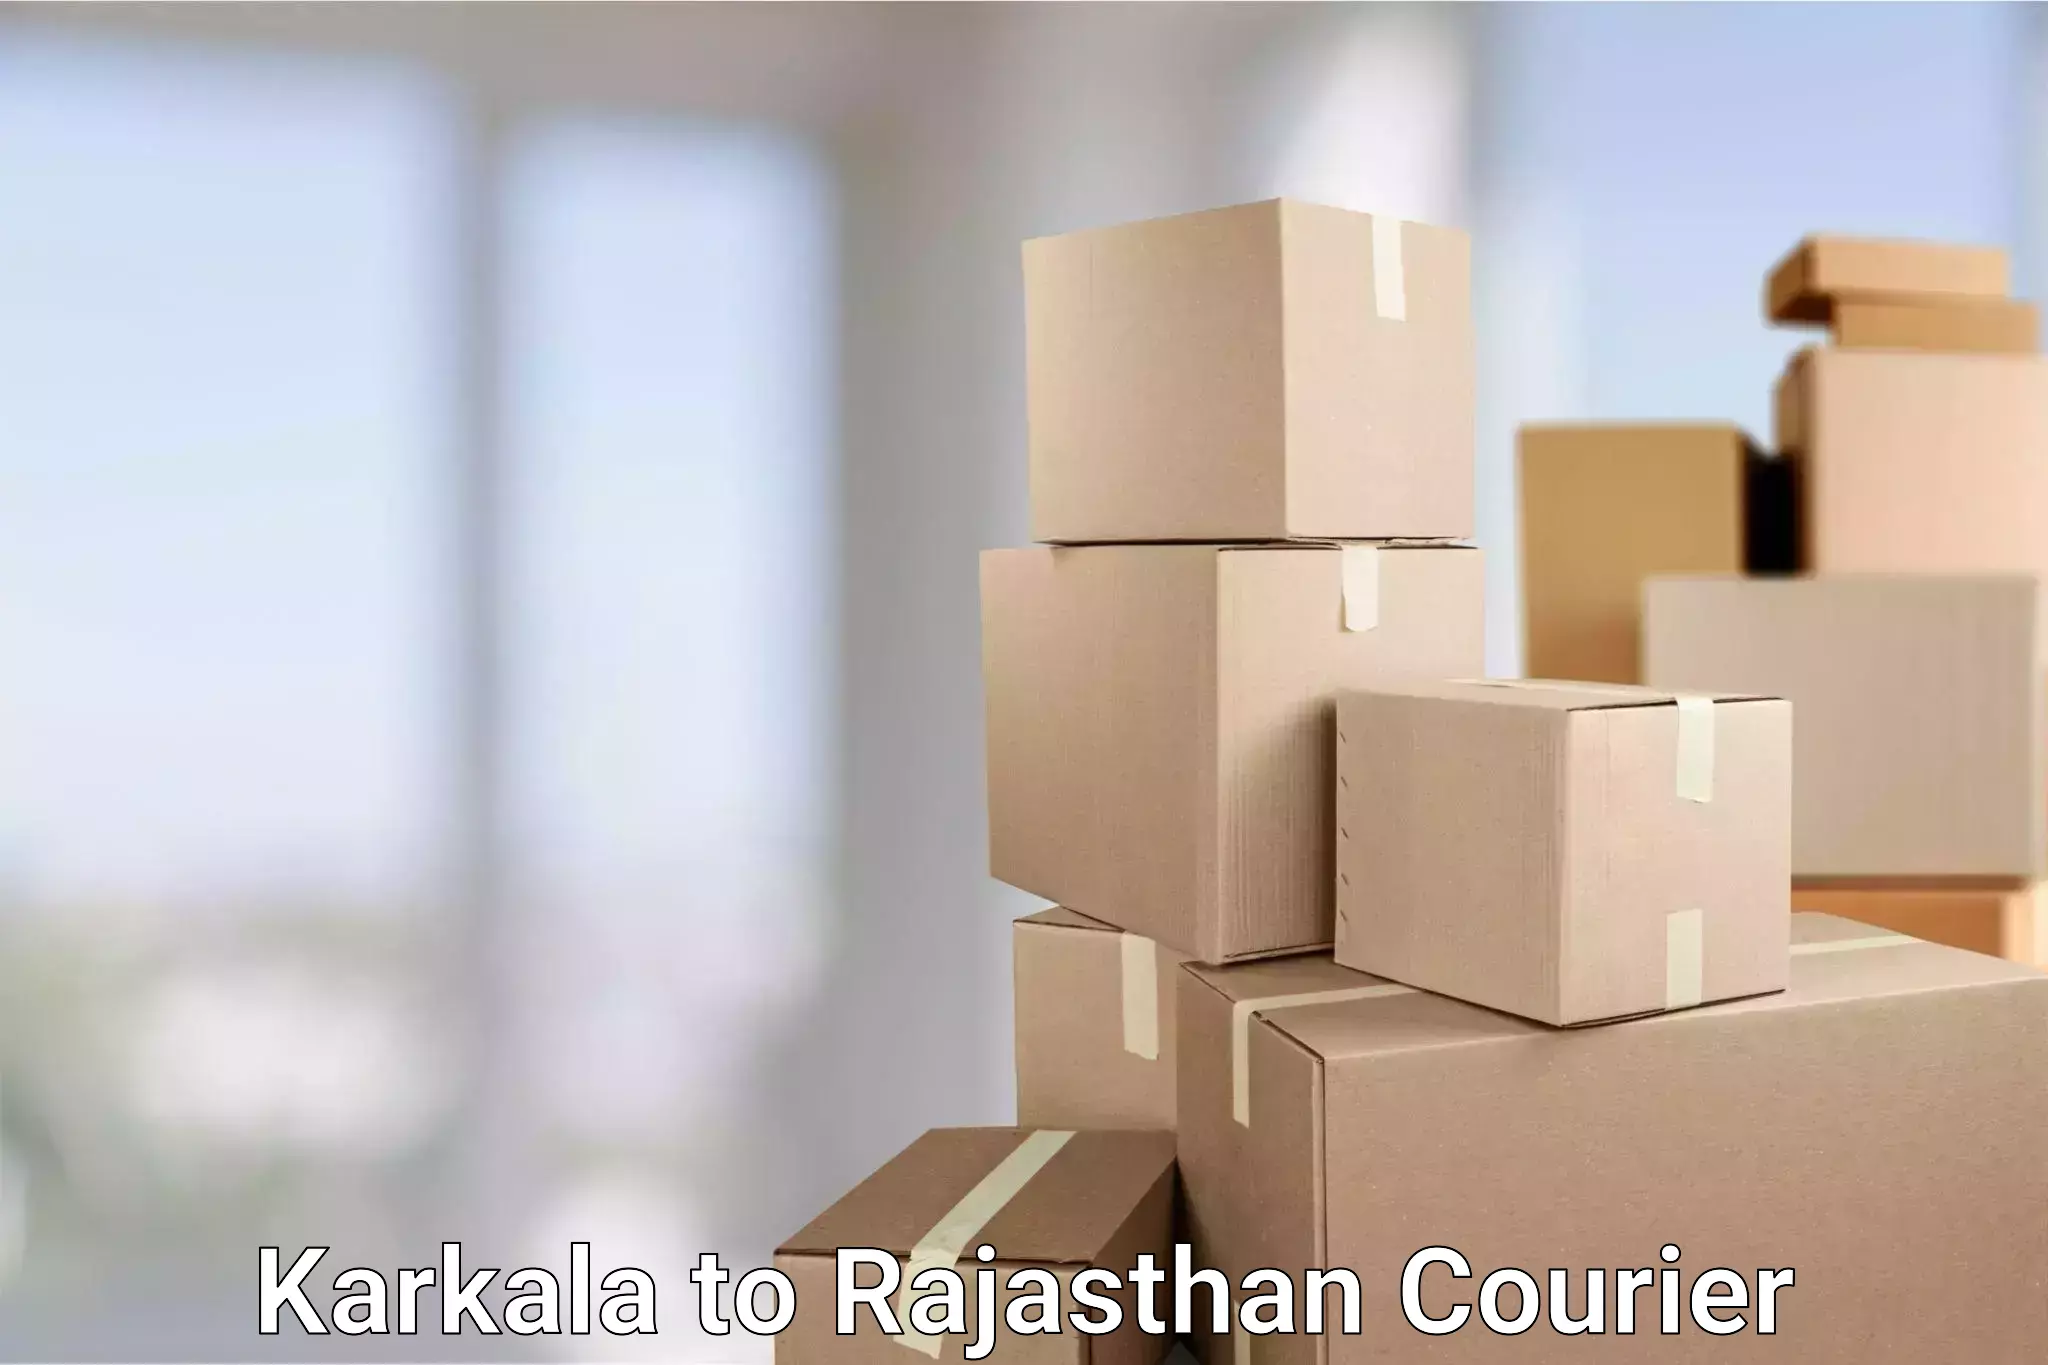 Flexible delivery scheduling Karkala to Kotputli